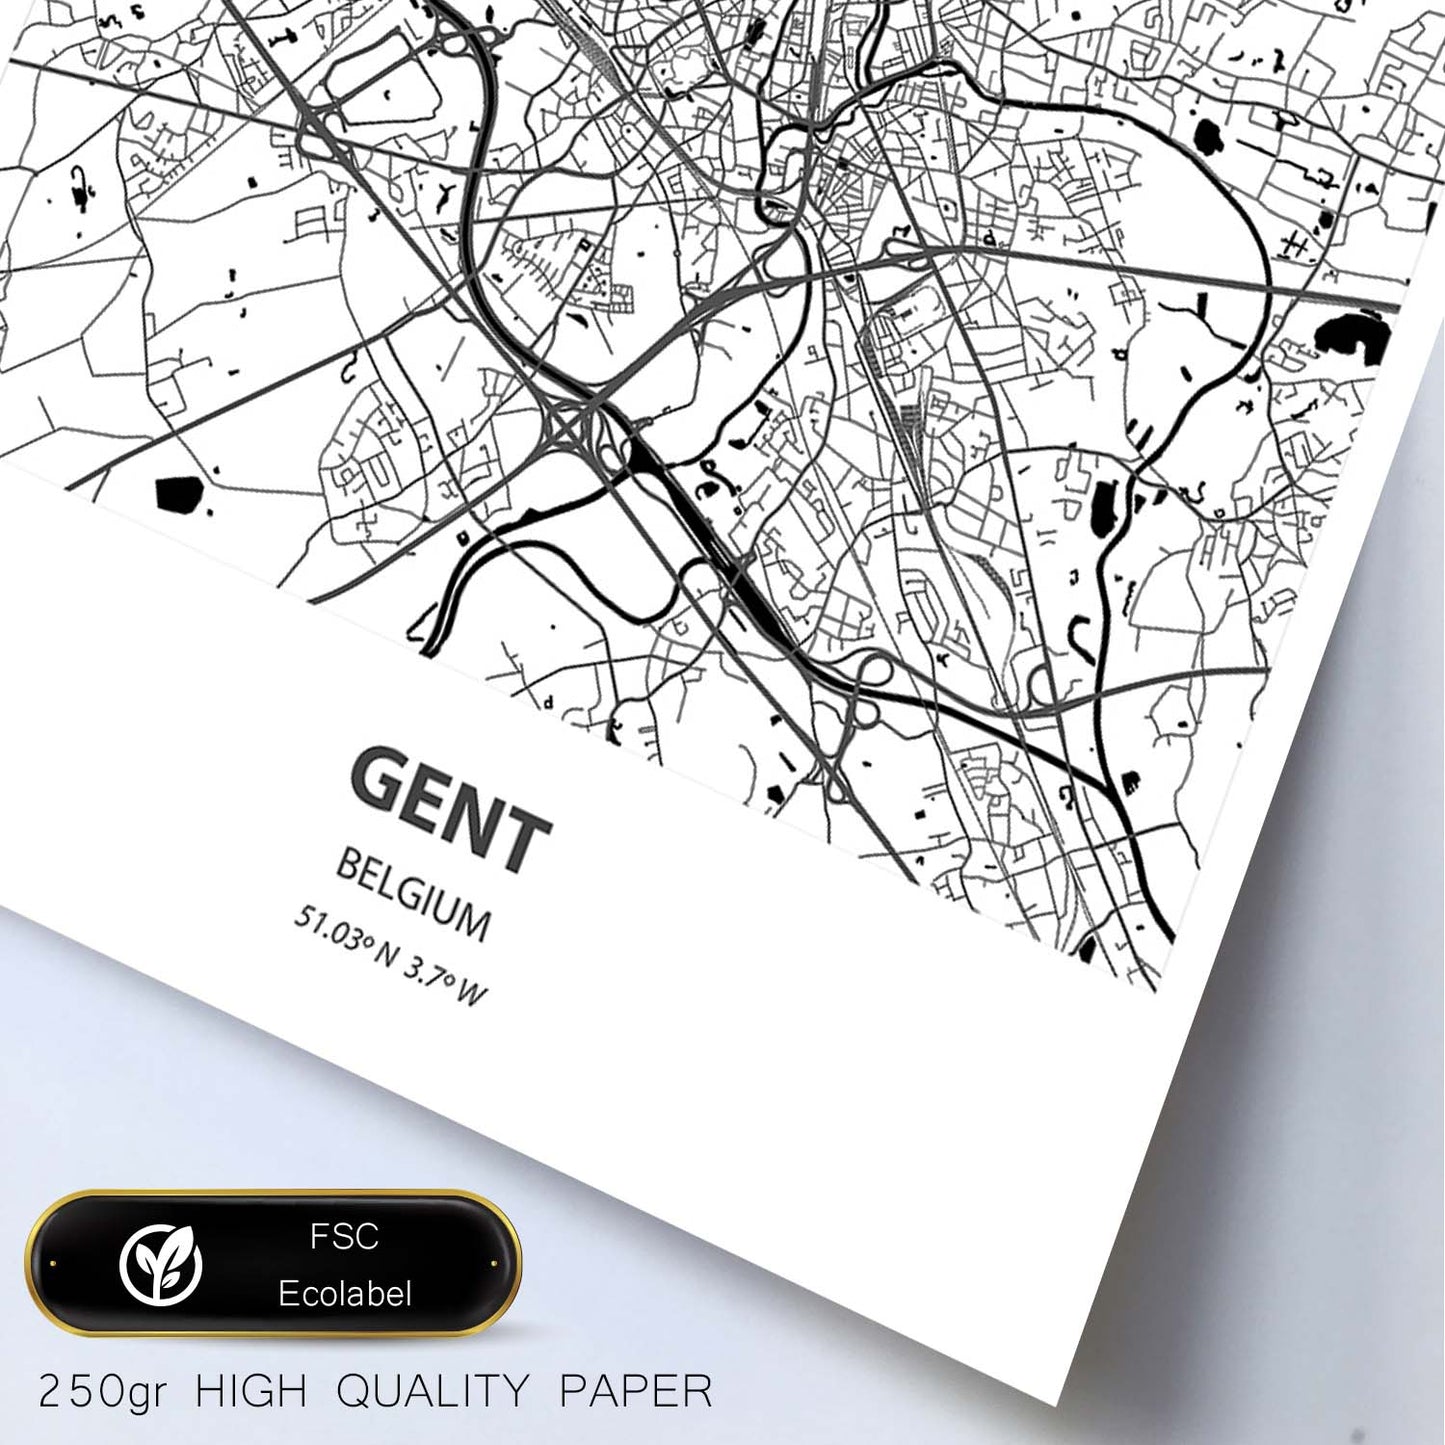 Poster con mapa de Gent - Belgica. Láminas de ciudades de Holanda y Bélgica con mares y ríos en color negro.-Artwork-Nacnic-Nacnic Estudio SL